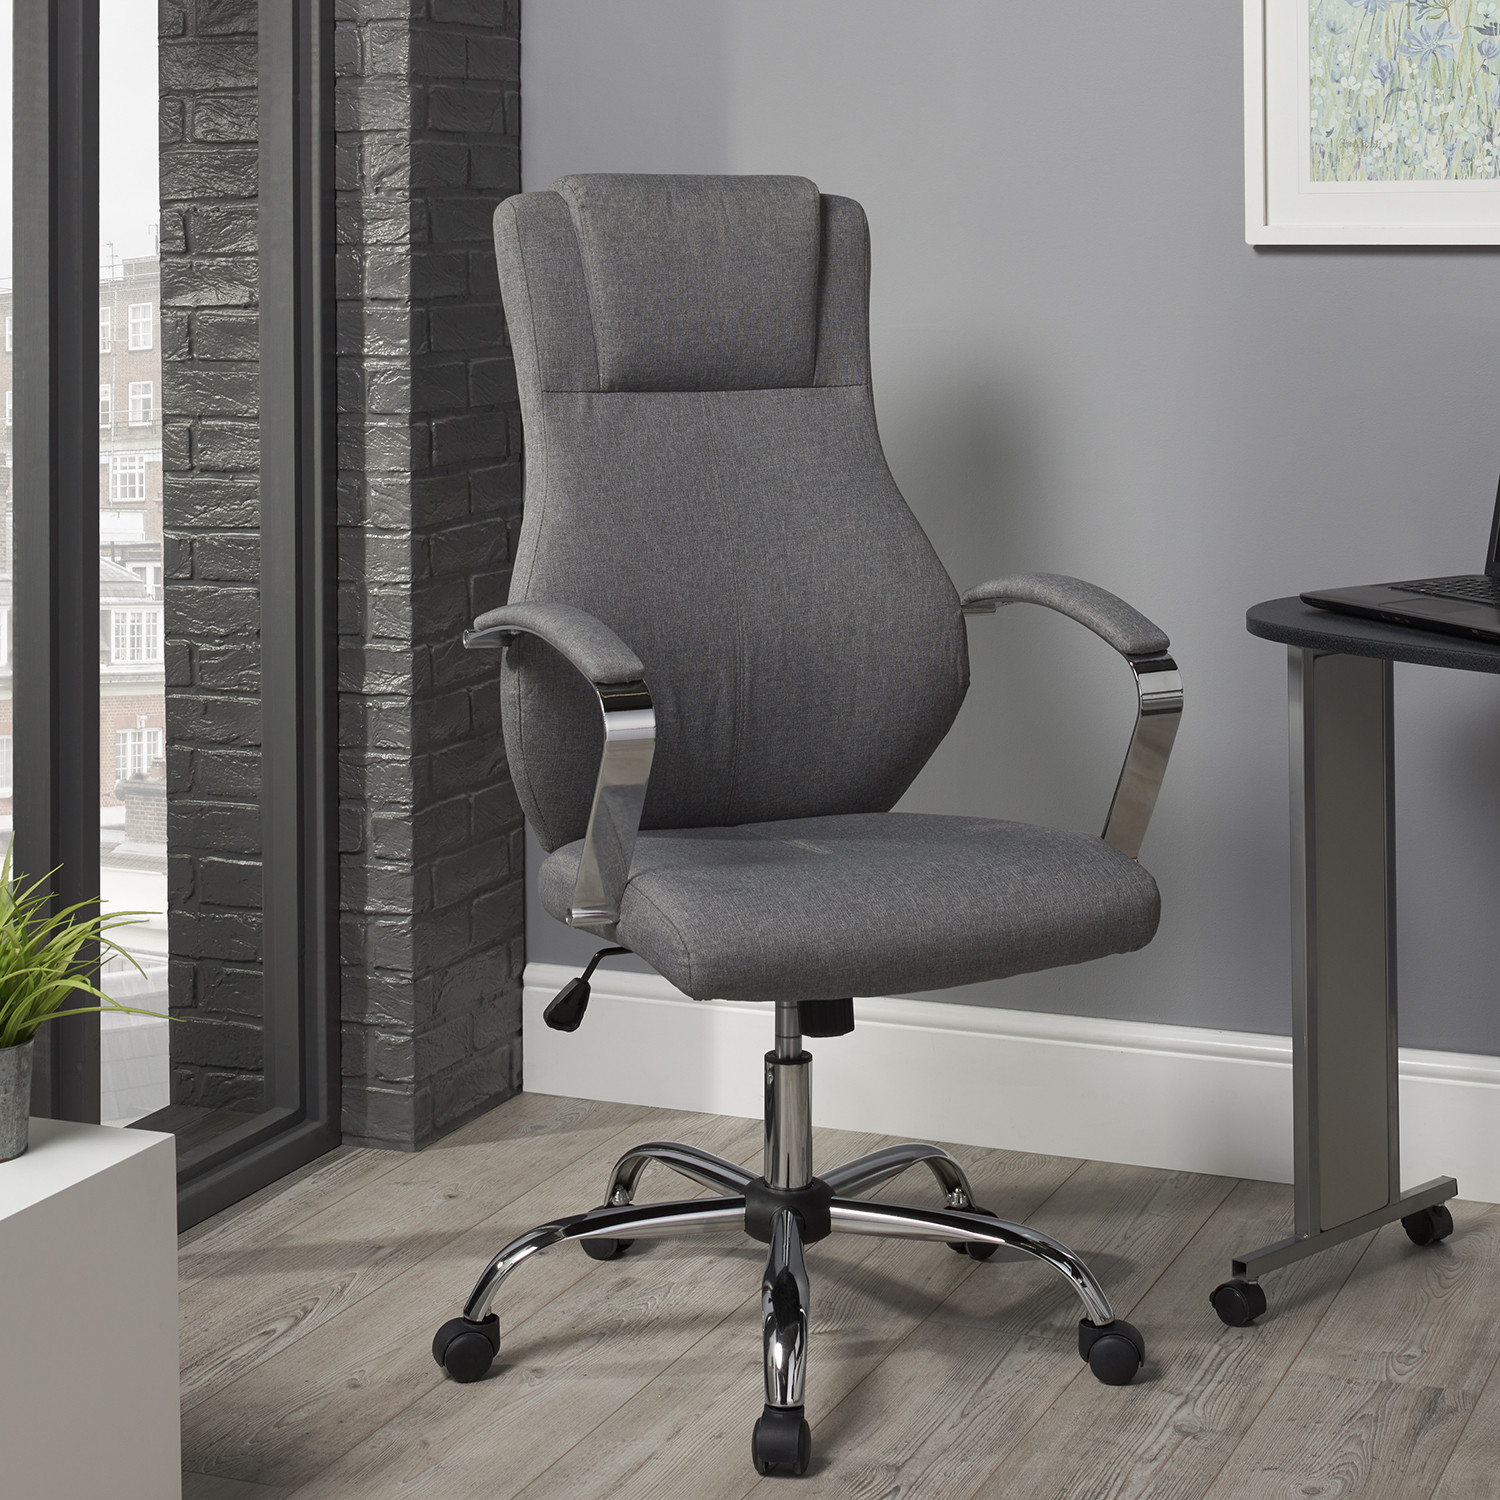 Kroft Grey Linen Swivel Office Chair Image 1